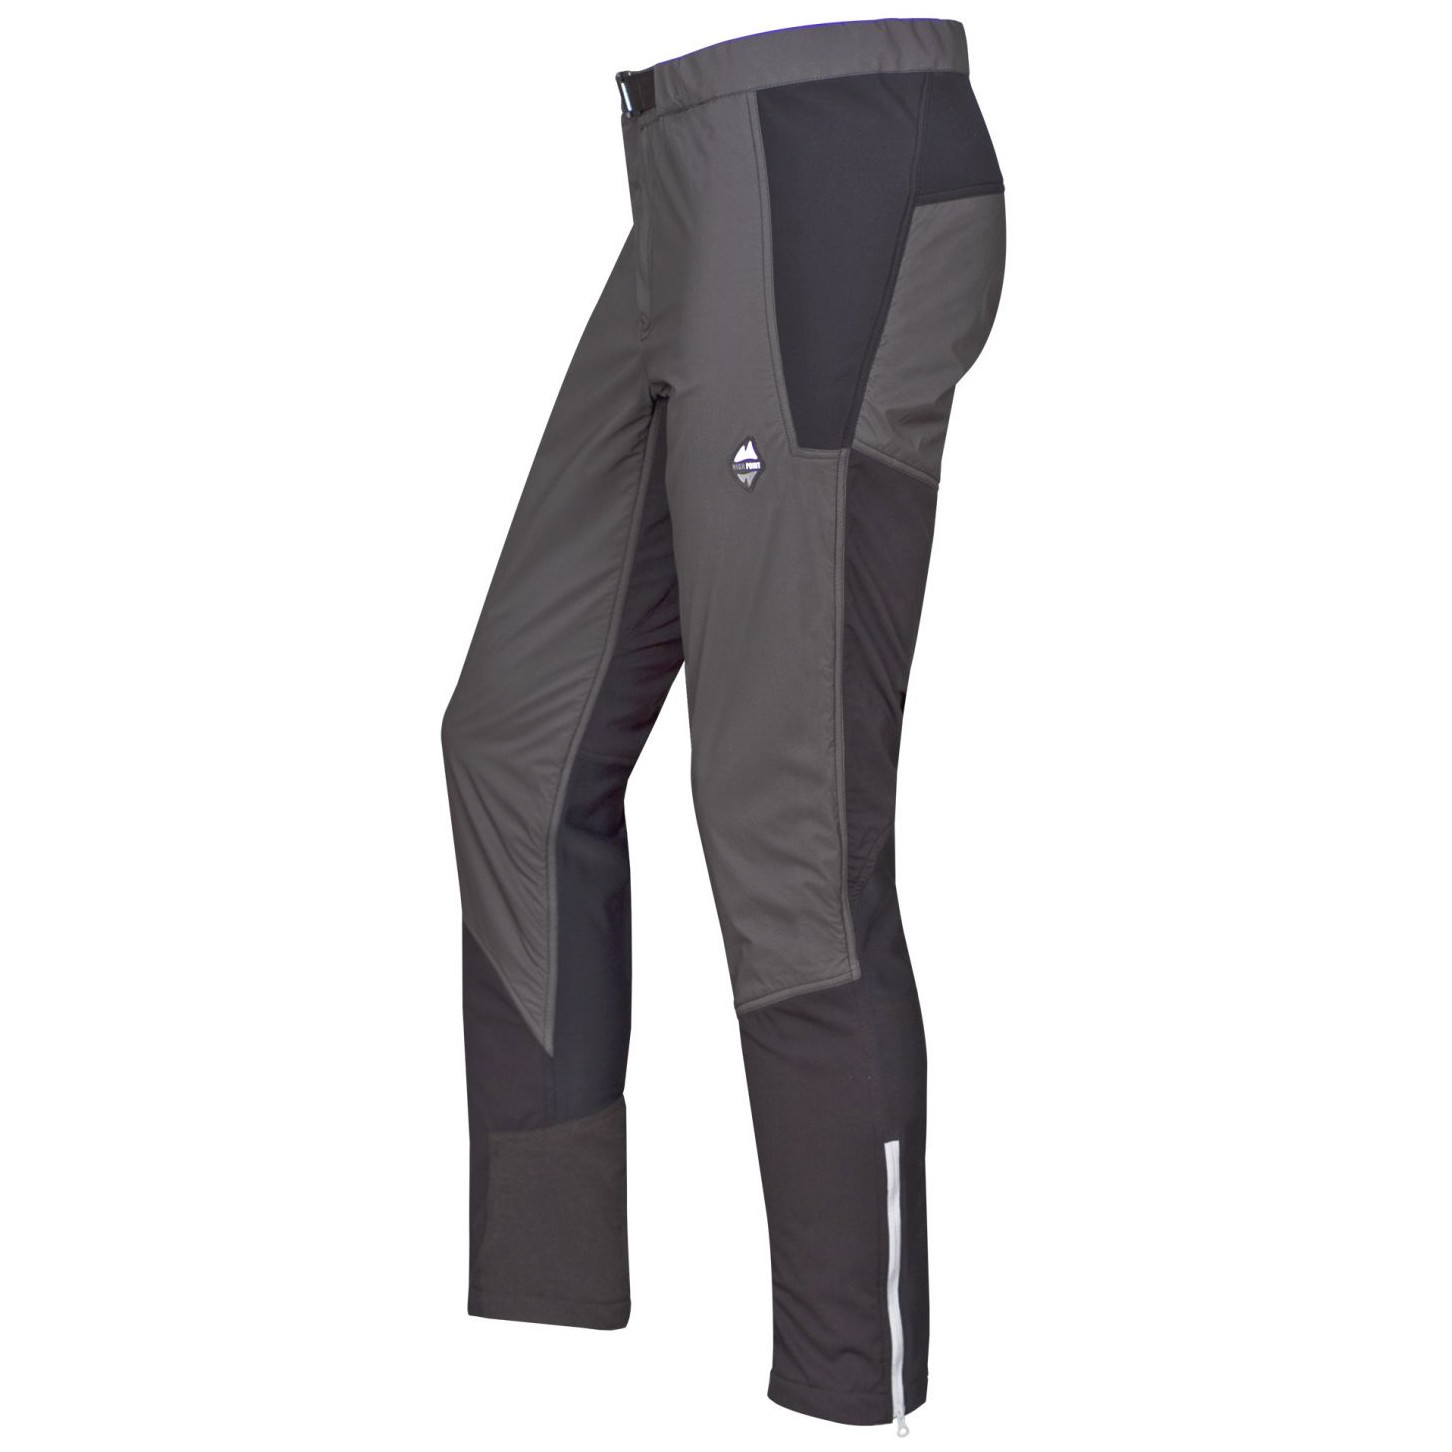 Pánské kalhoty High Point Alpha Pants Velikost: XL / Barva: šedá/černá